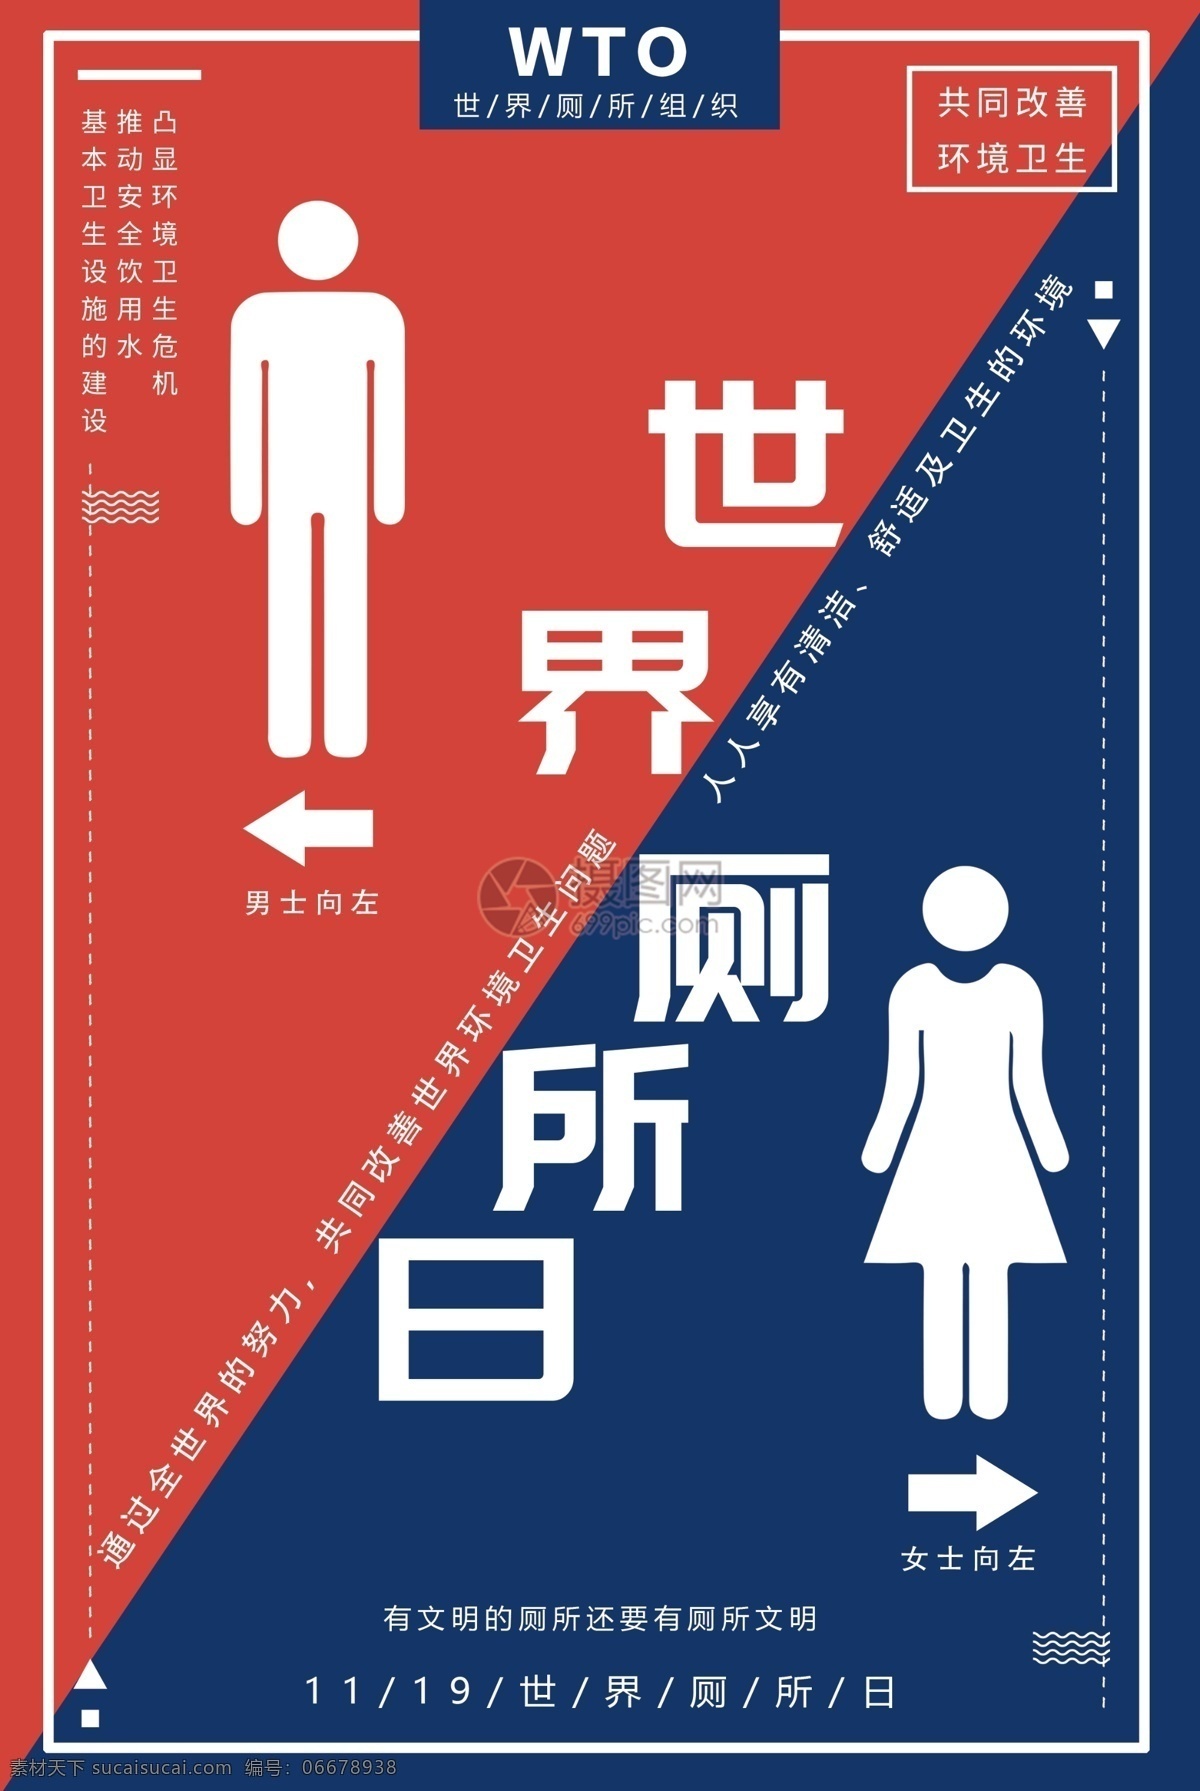 红蓝 世界 厕所 日 世界厕所日 国际节日 卫生 公共 男女 环境卫生 海报